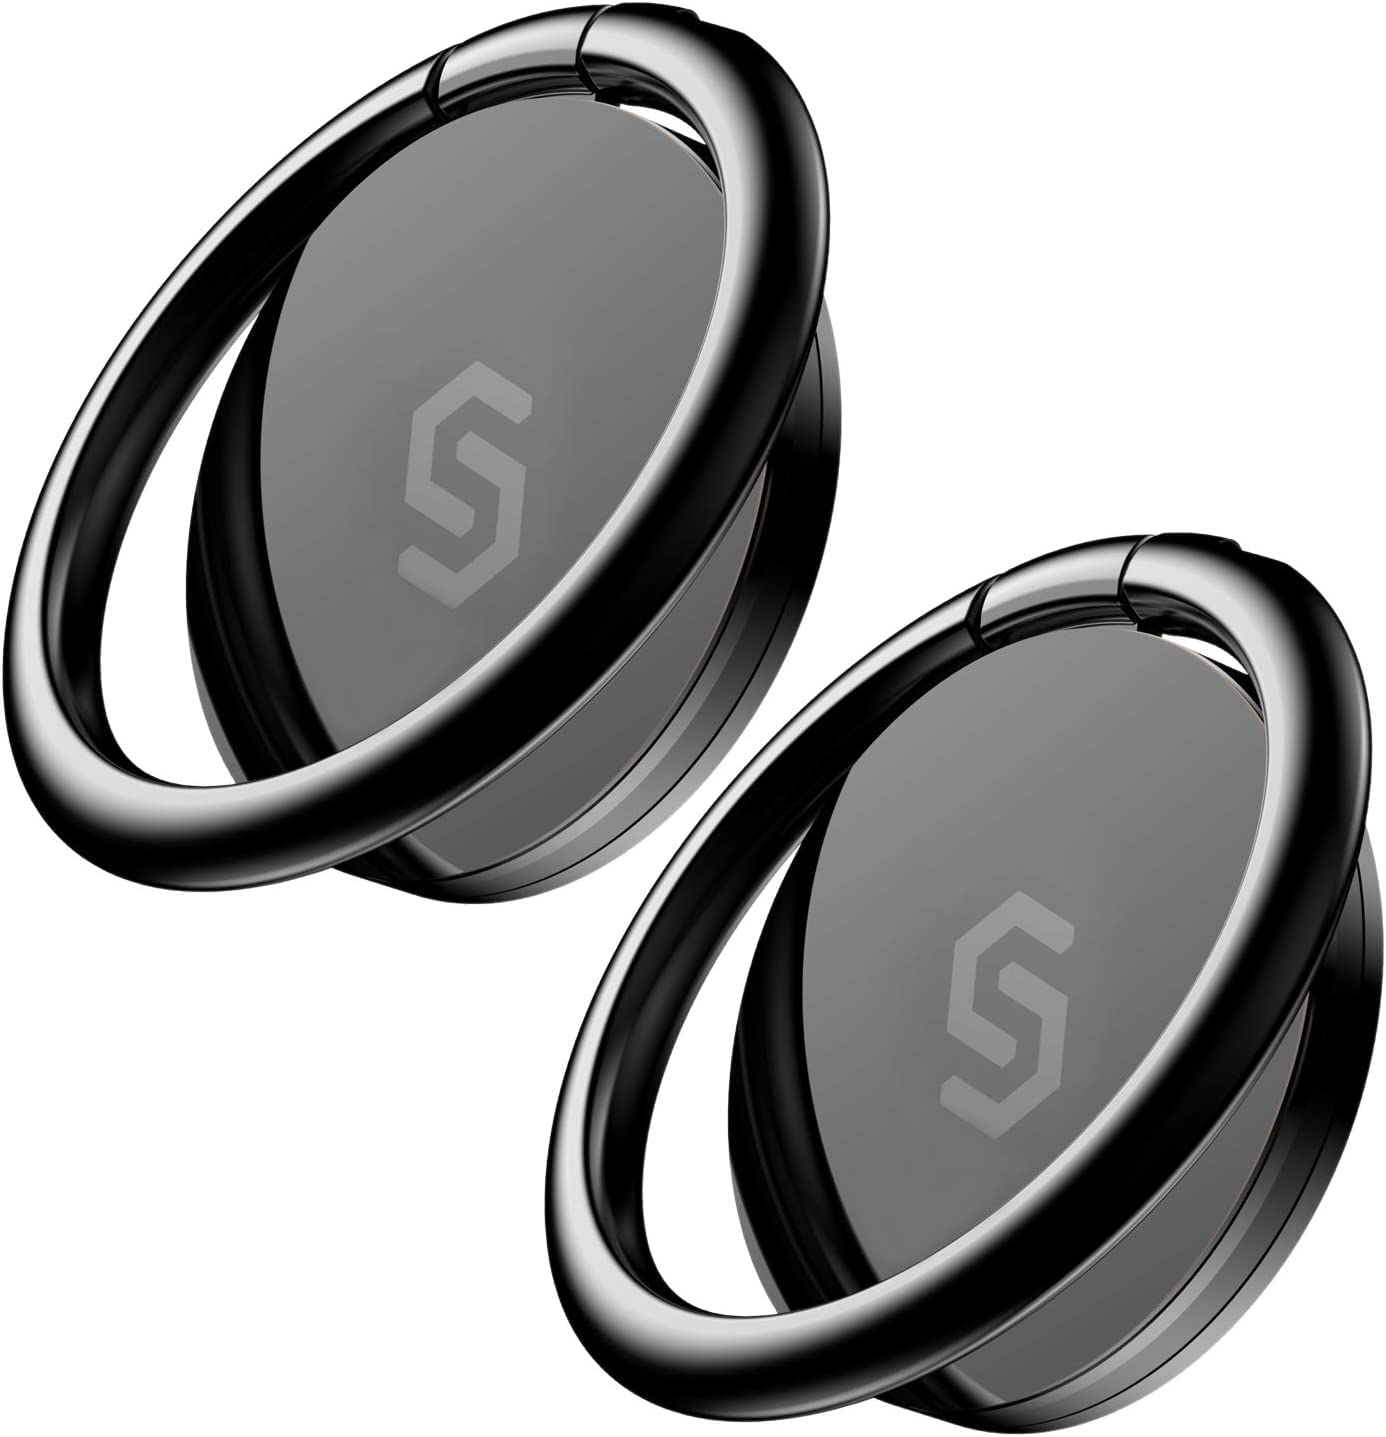 【2個入り】Syncwire スマホリング 携帯リング 薄型 360°回転 落下防止 指輪型 スタンド機能 iPhone リング ホールドリング フィンガー..